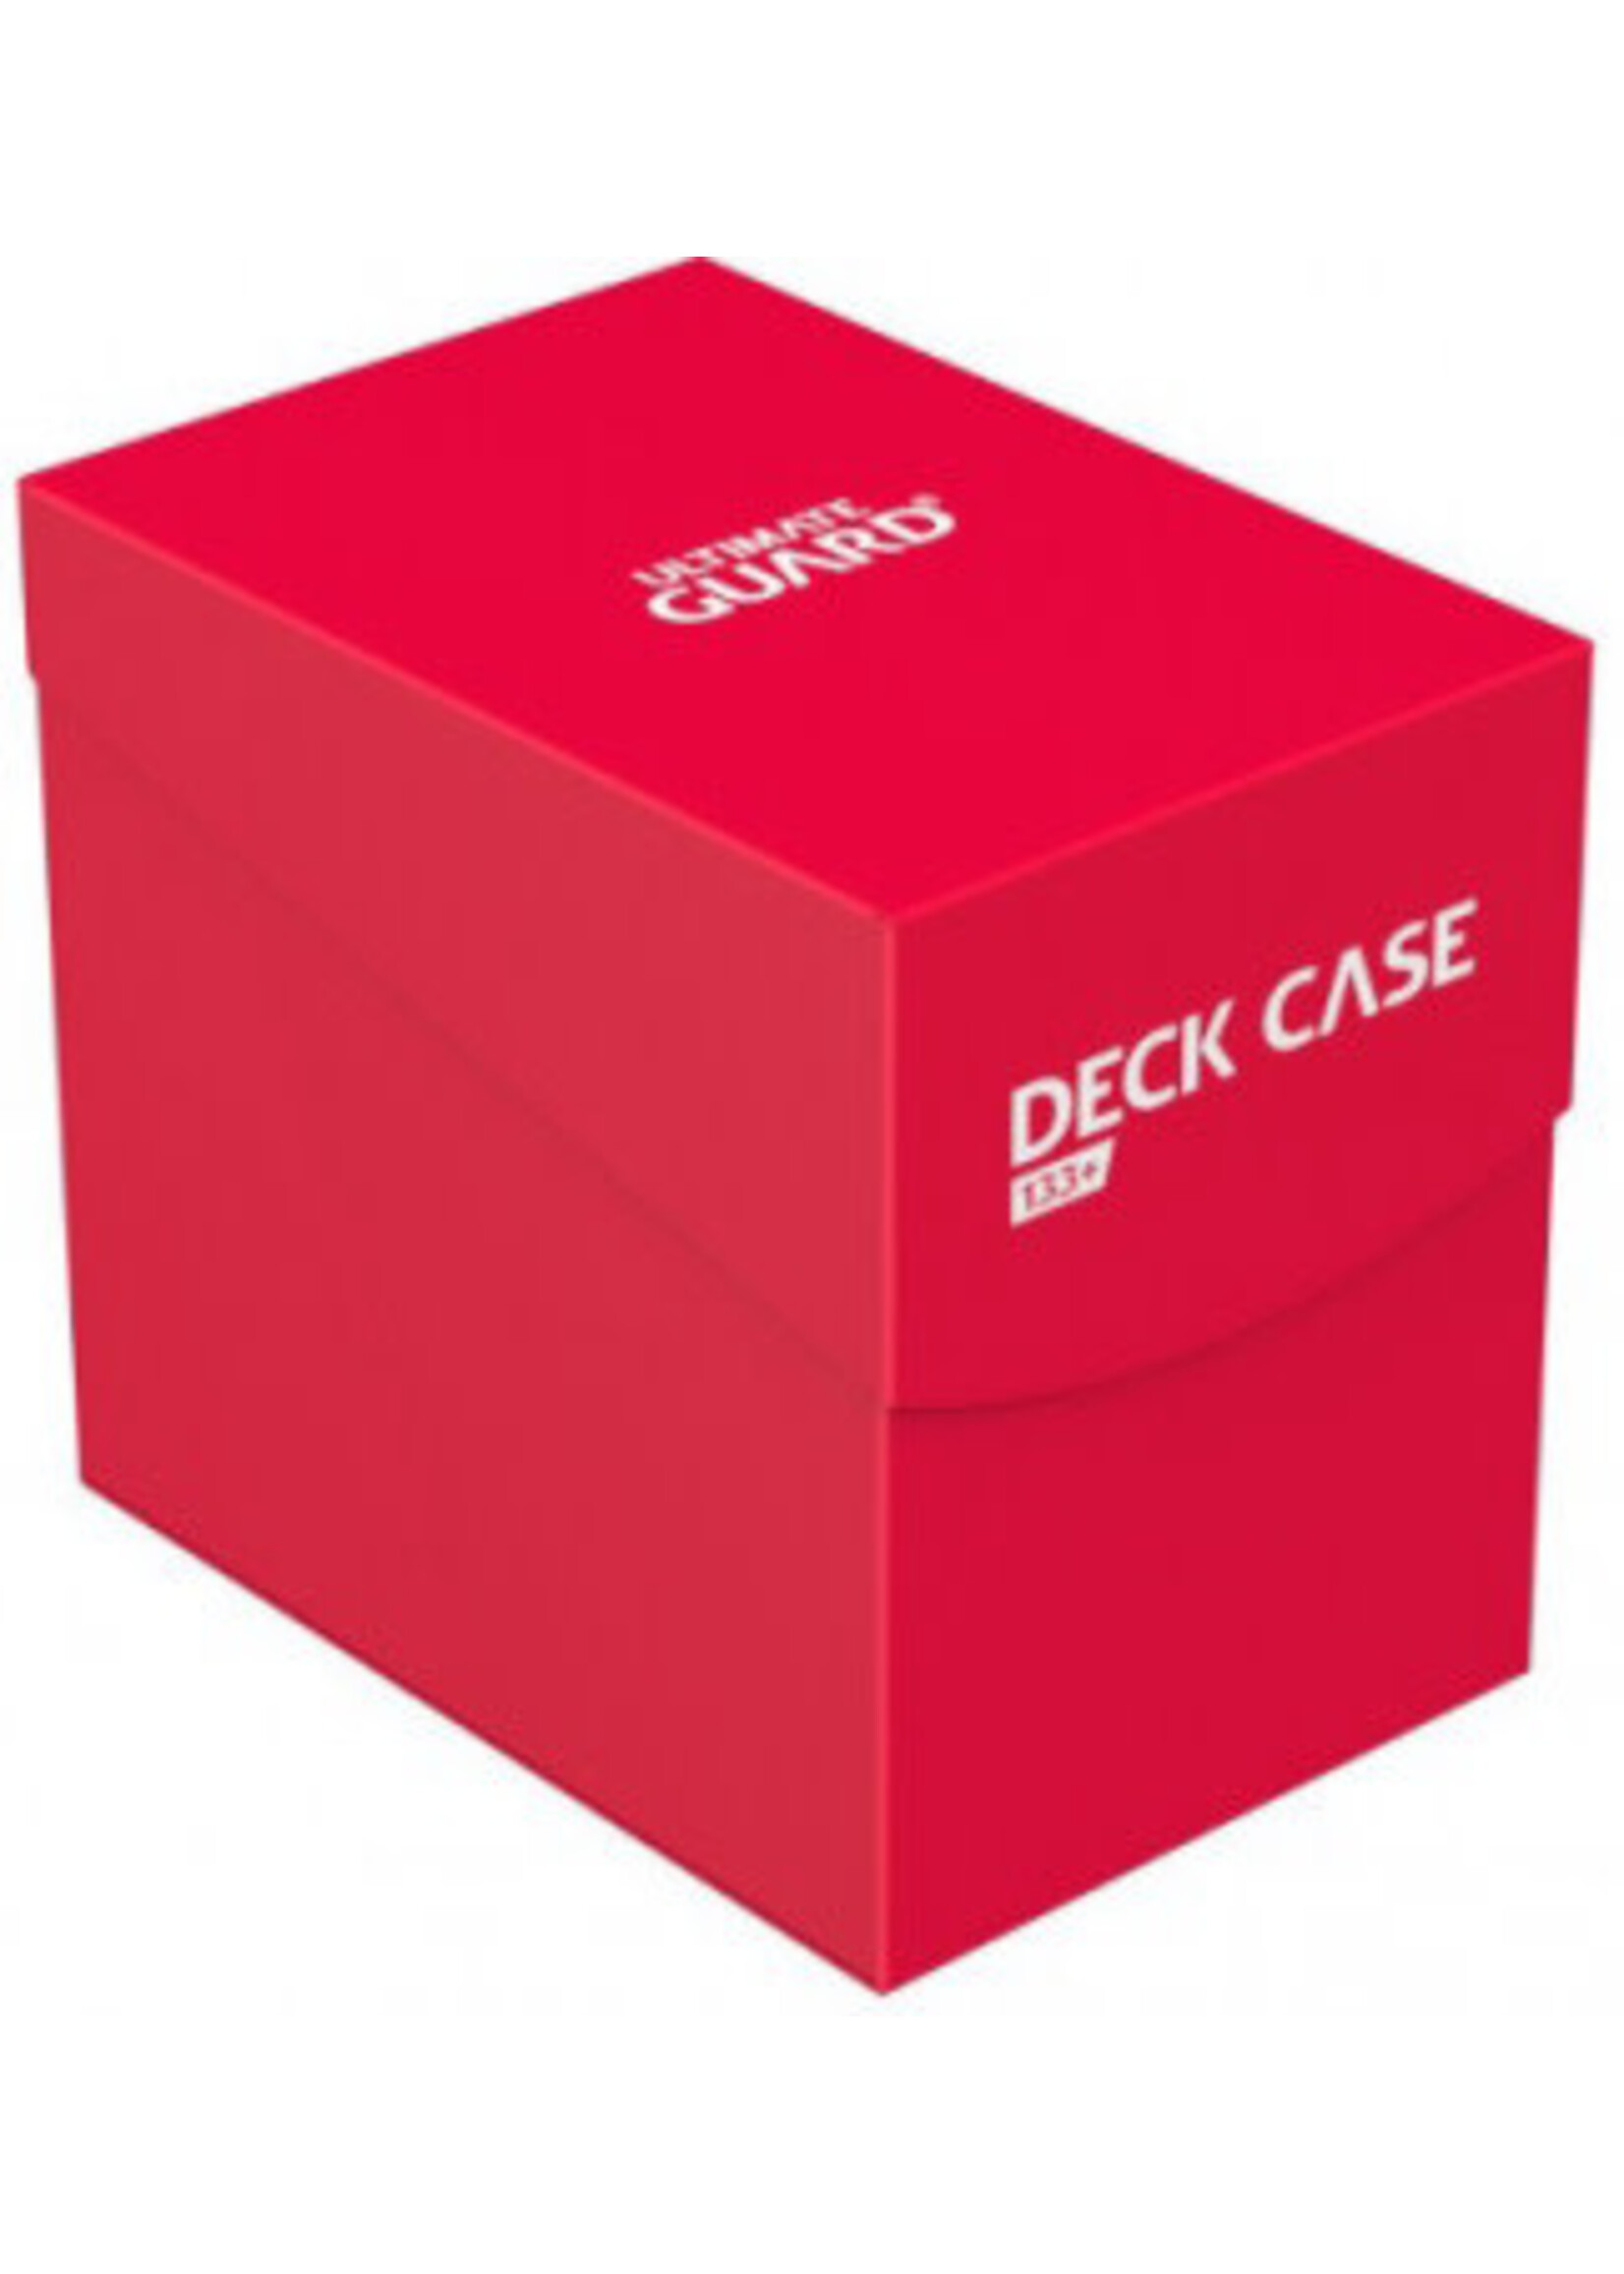 UG DECK CASE 133+ RED